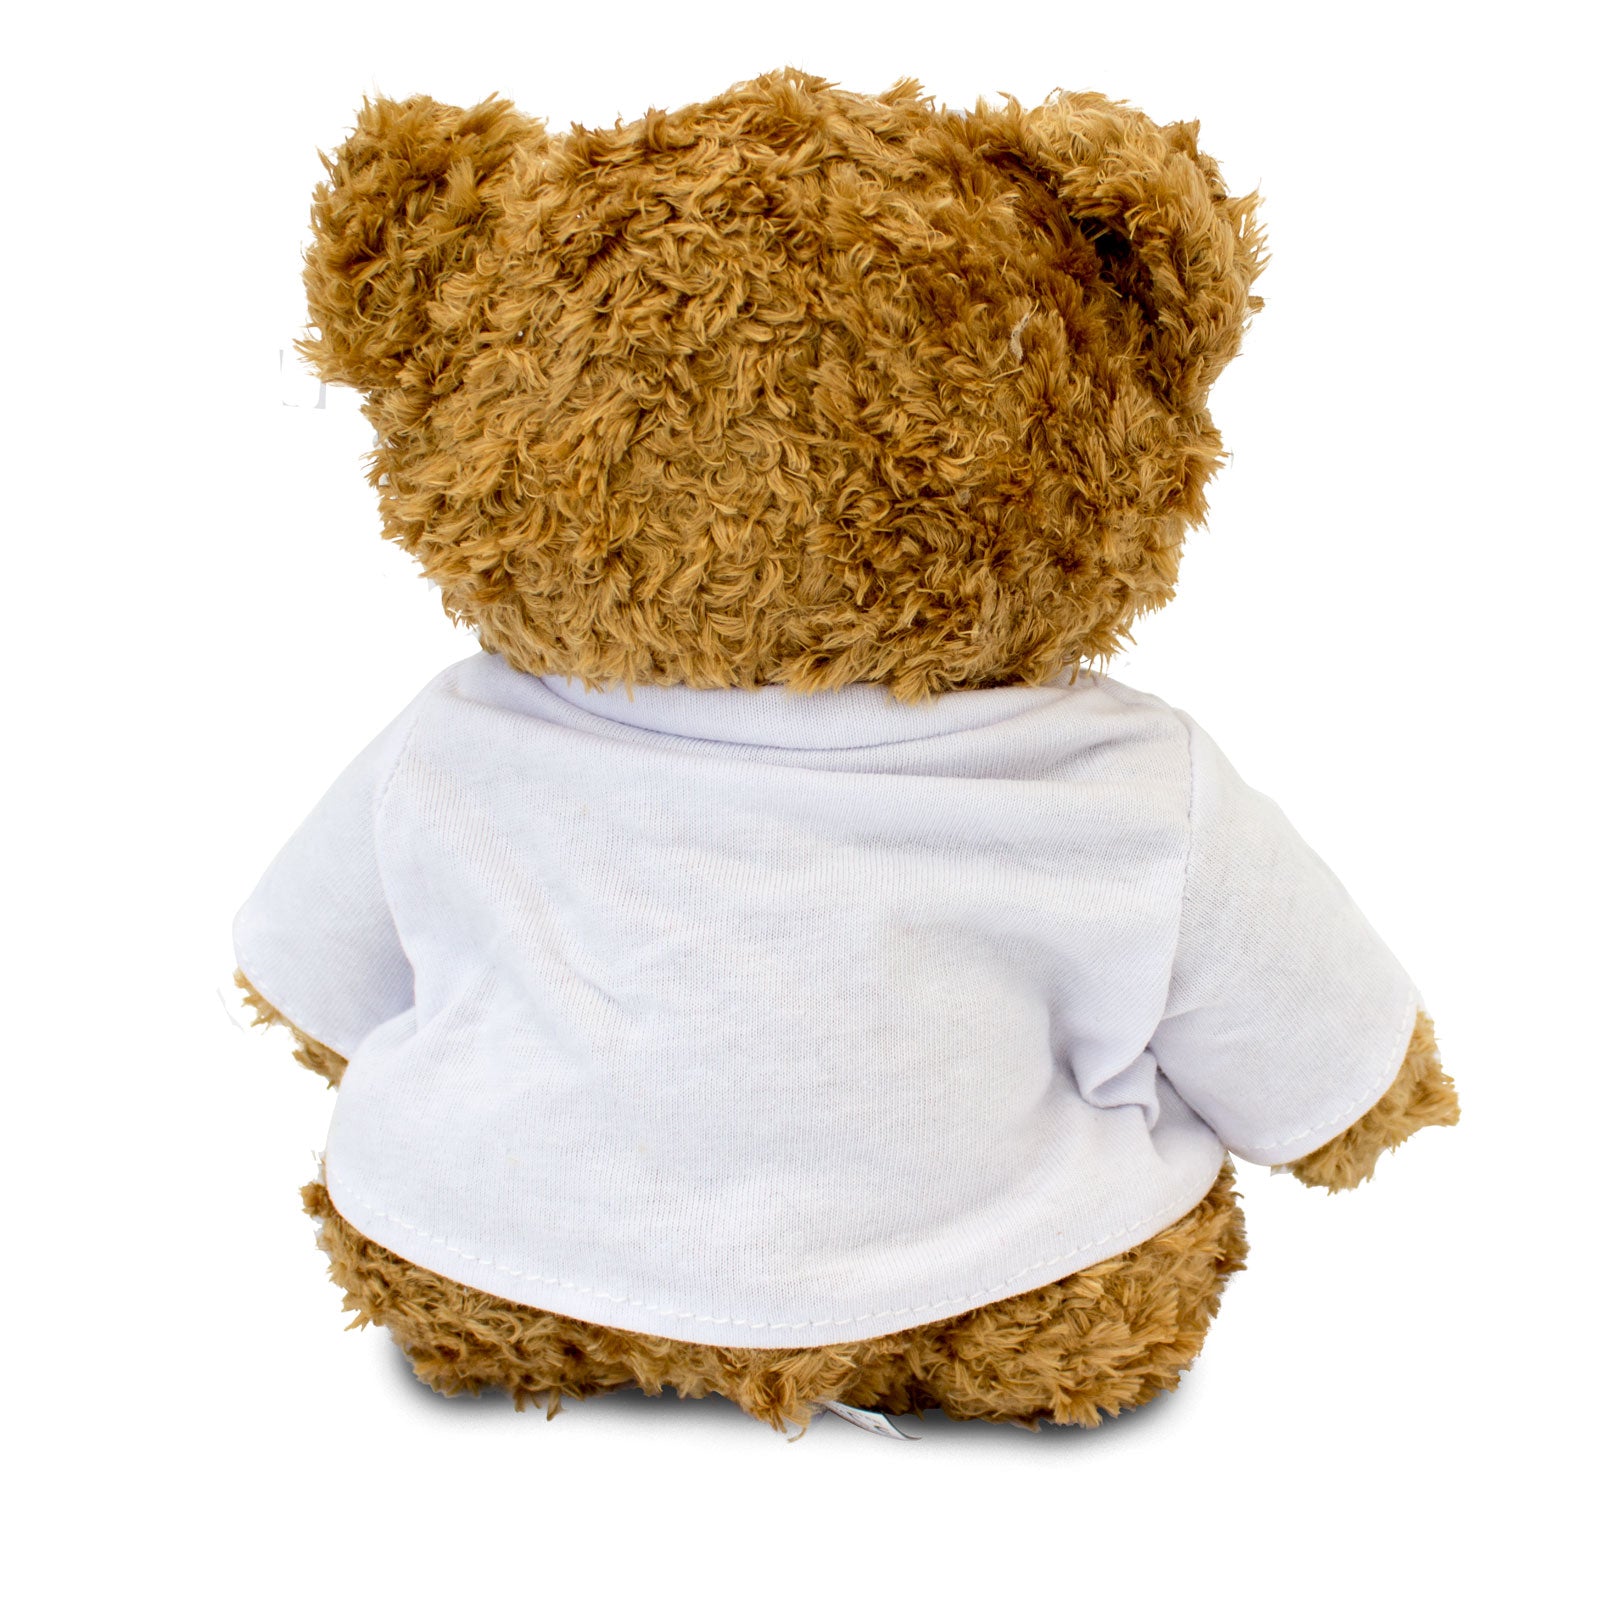 Get Well Soon Adalee - Teddy Bear